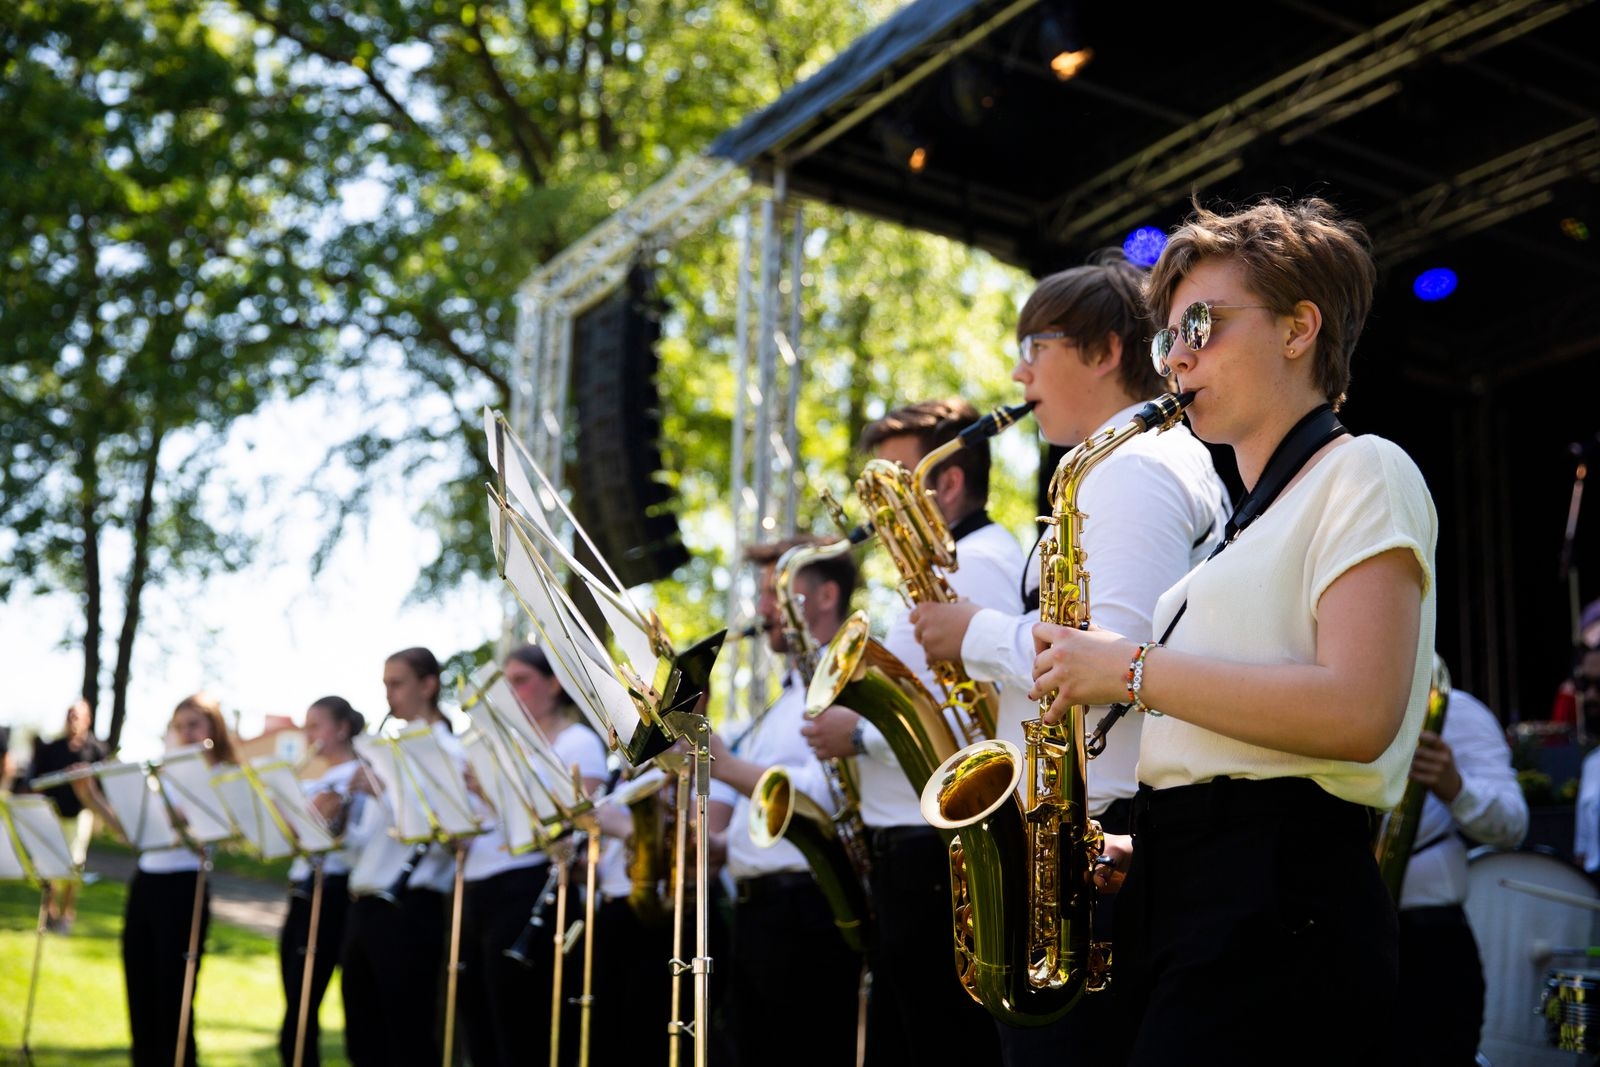 Skurups Kulturskolas ungdomsorkester spelade bland annat en låt som de vunnit silver med i Riksförbundet Unga musikanterns blåsmusiktävling i år.